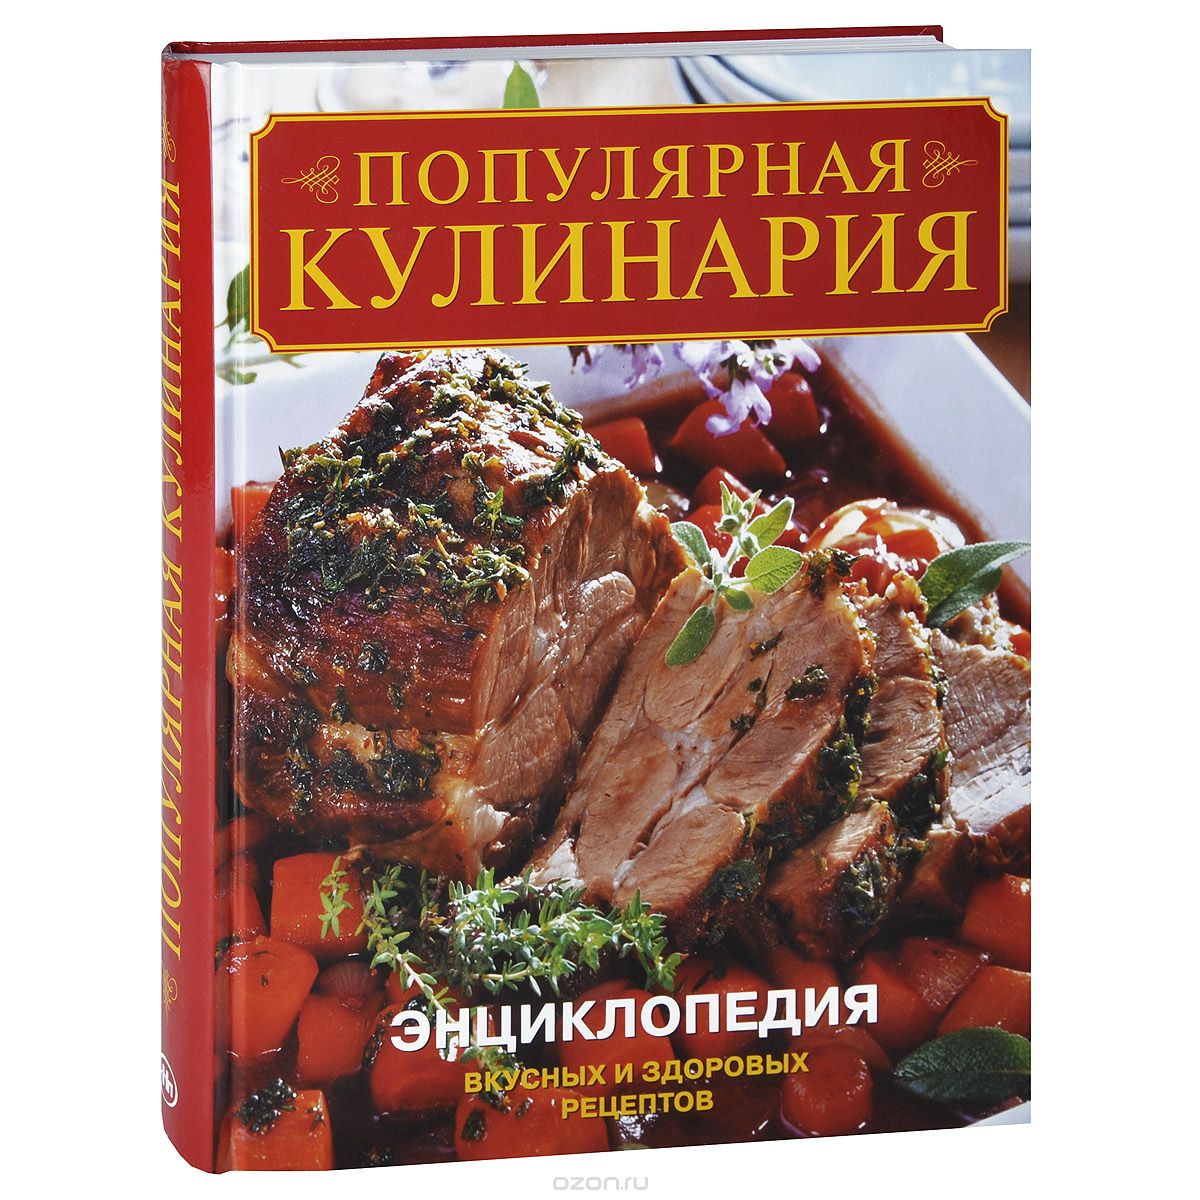 Скачать книгу "Популярная кулинария. Энциклопедия вкусных и здоровых рецептов"